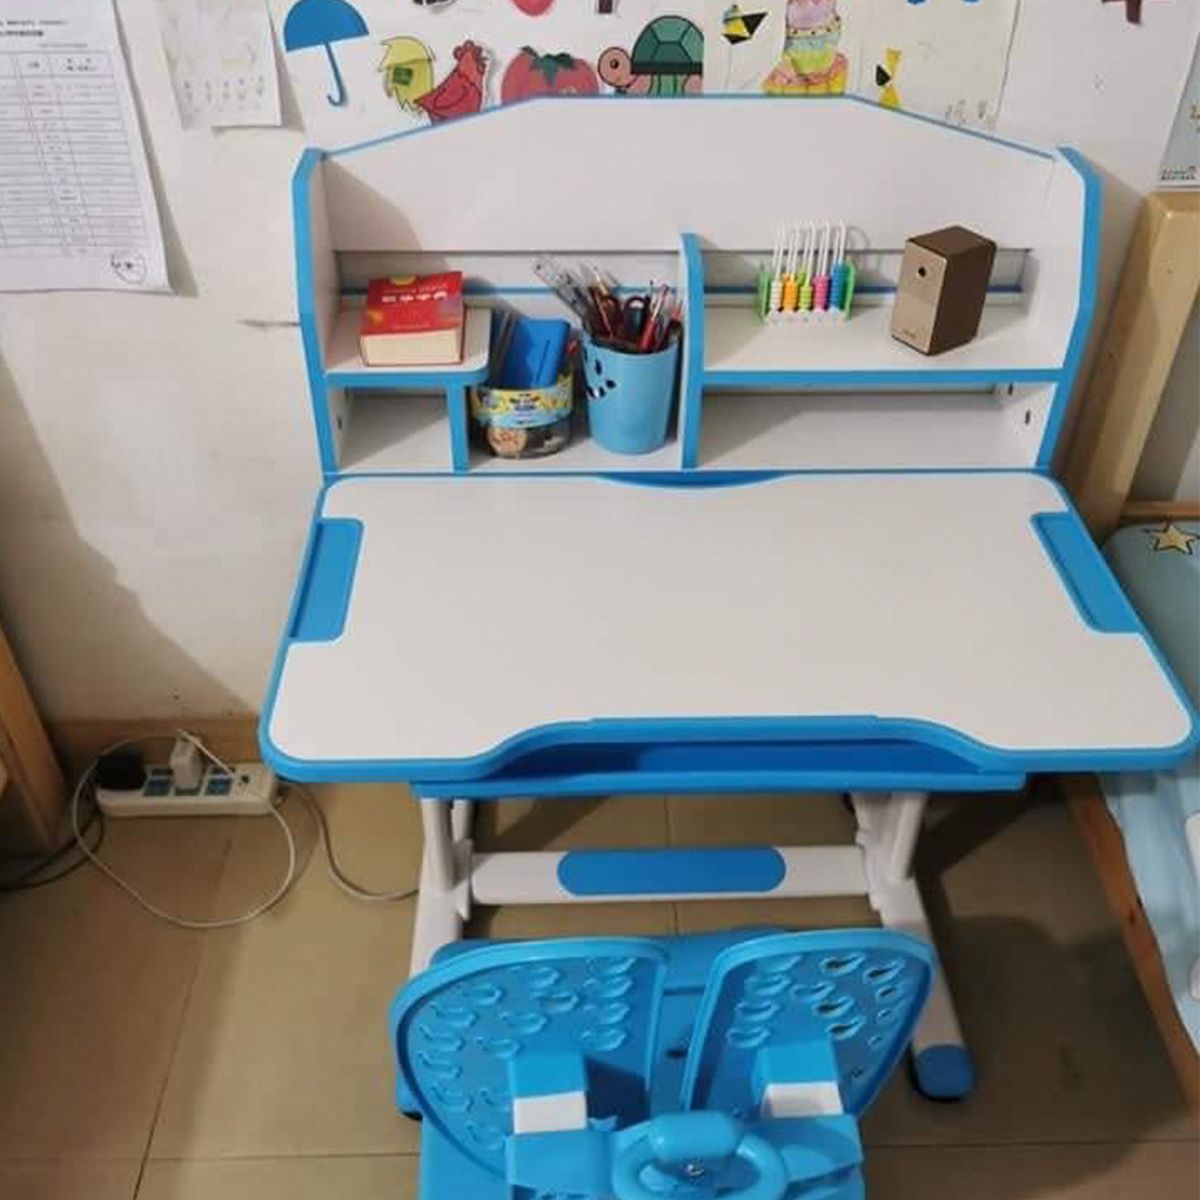 Bộ bàn ghế học sinh thông minh SMLIFE Jasper 80cm - BK306 - Xanh | Bàn: 80cm x 59cm x 52-76cm (mặt bàn nâng hạ) | Ghế nâng hạ